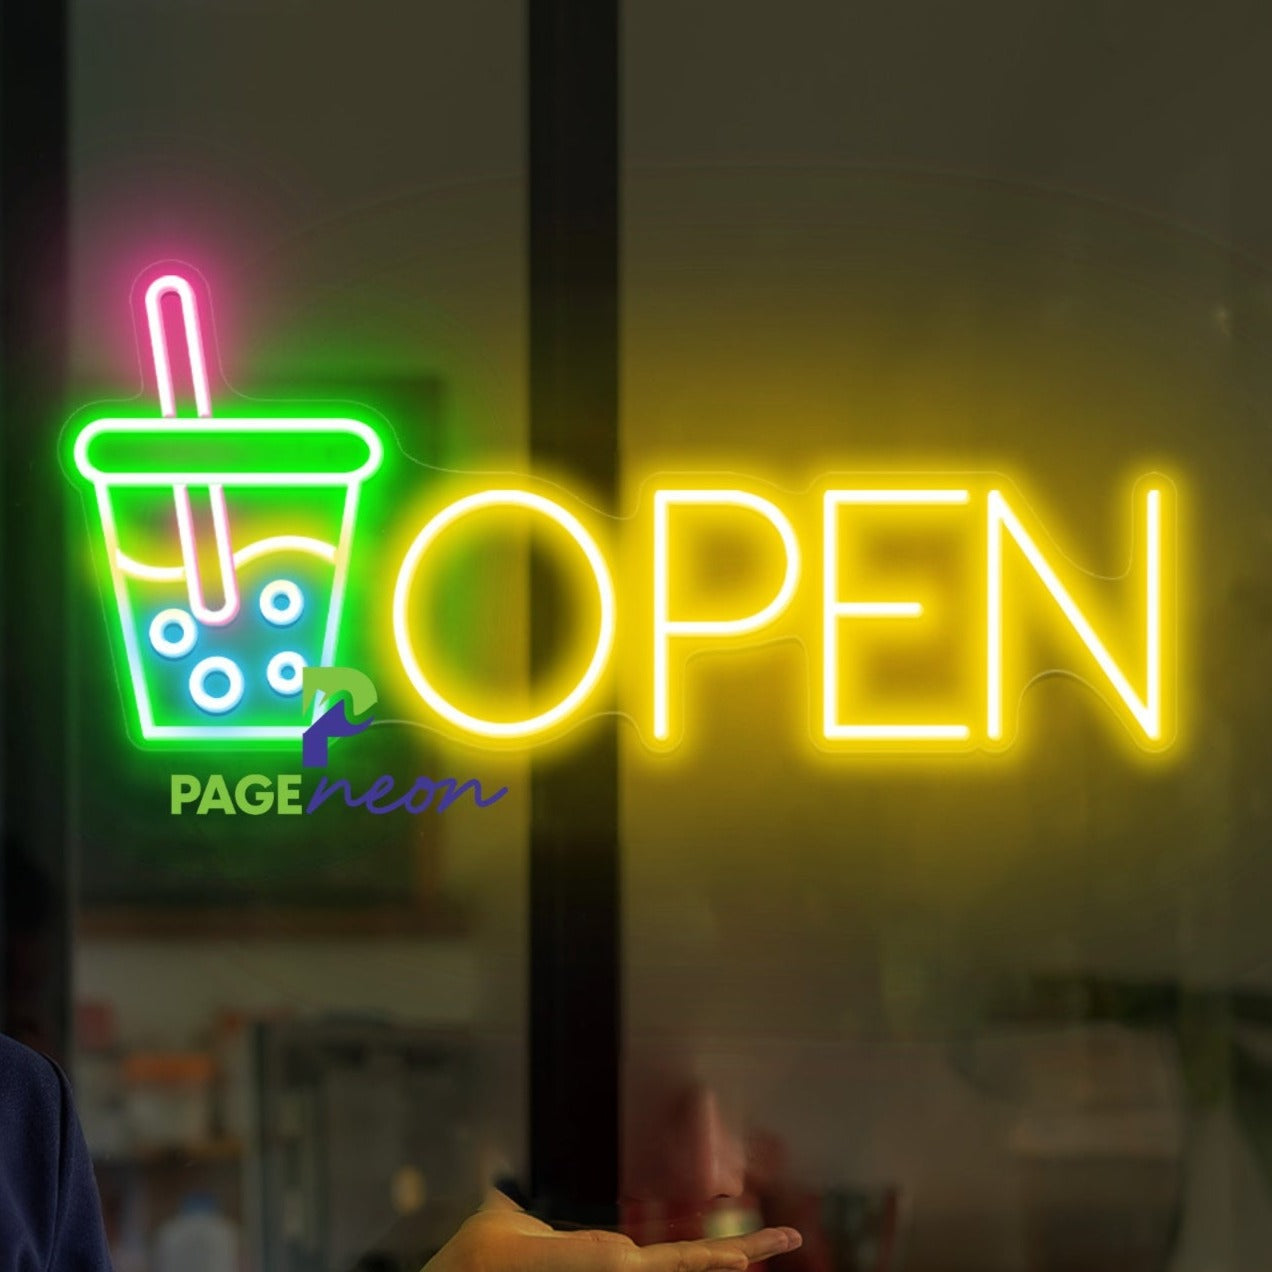 Bubble Tea Neon Open Sign Business Led Light